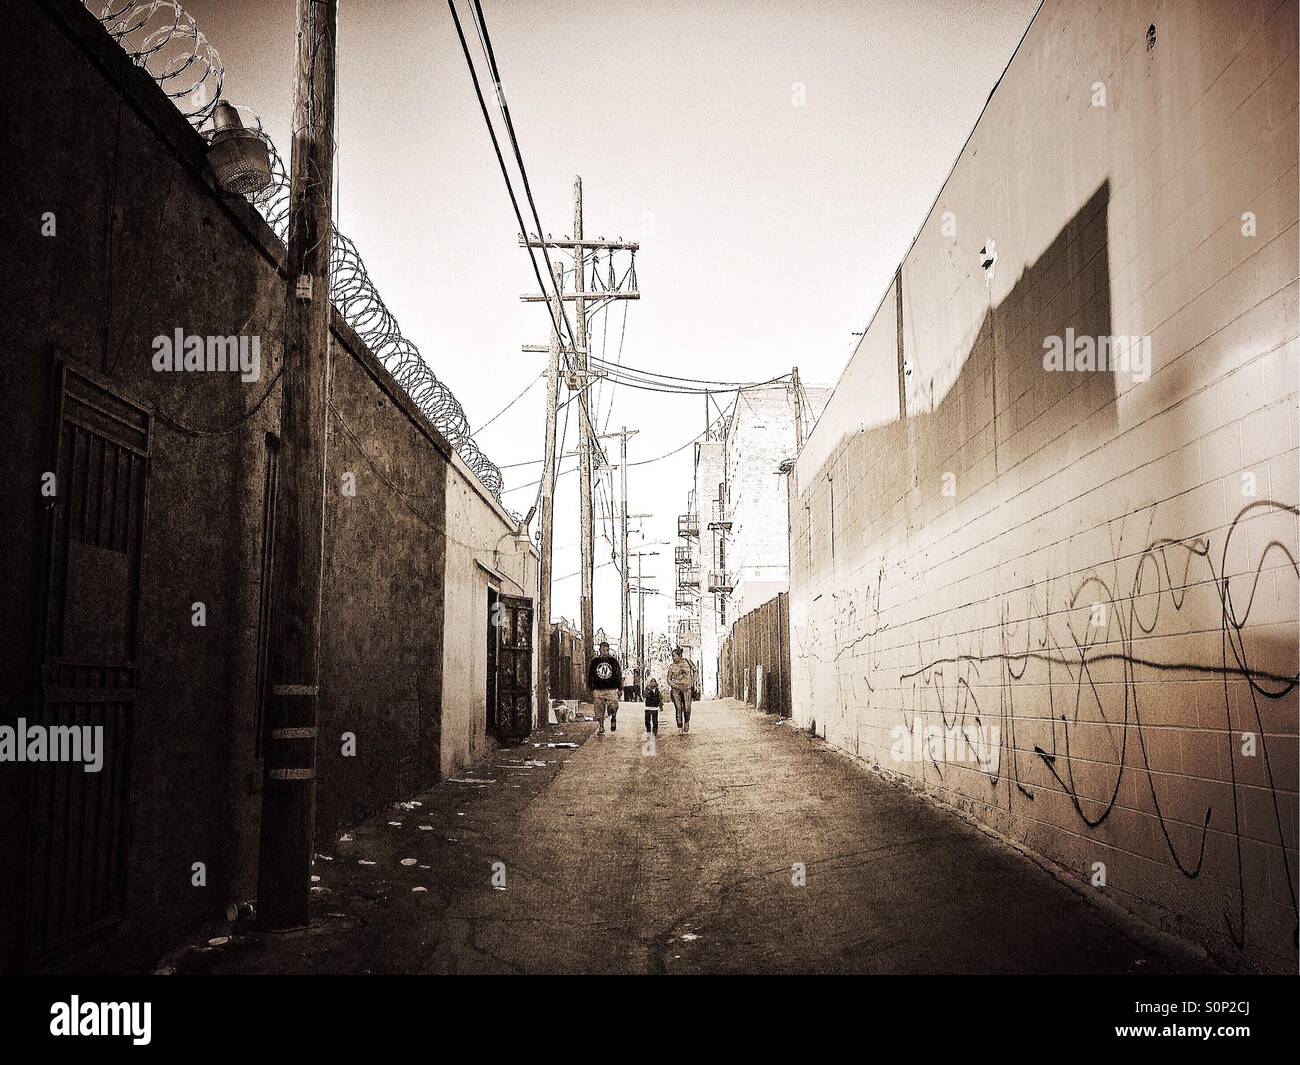 Eine Familie geht auf einen Verbündeten mit Graffiti-Bande in Westlake Los Angeles gekennzeichnet. Stockfoto